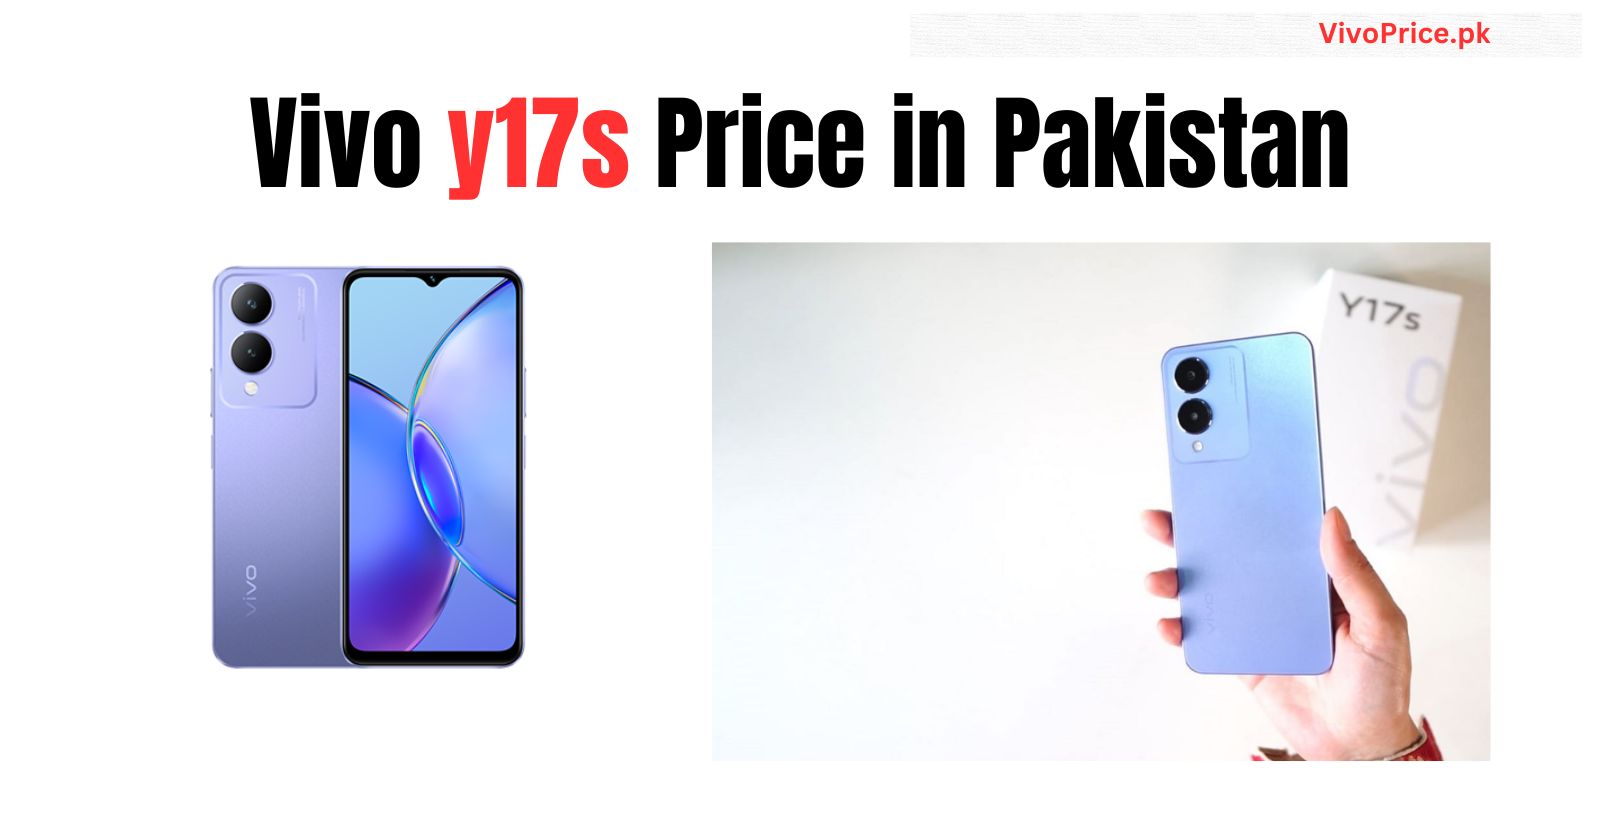 Vivo y17s Price in Pakistan | Vivoprice.pk